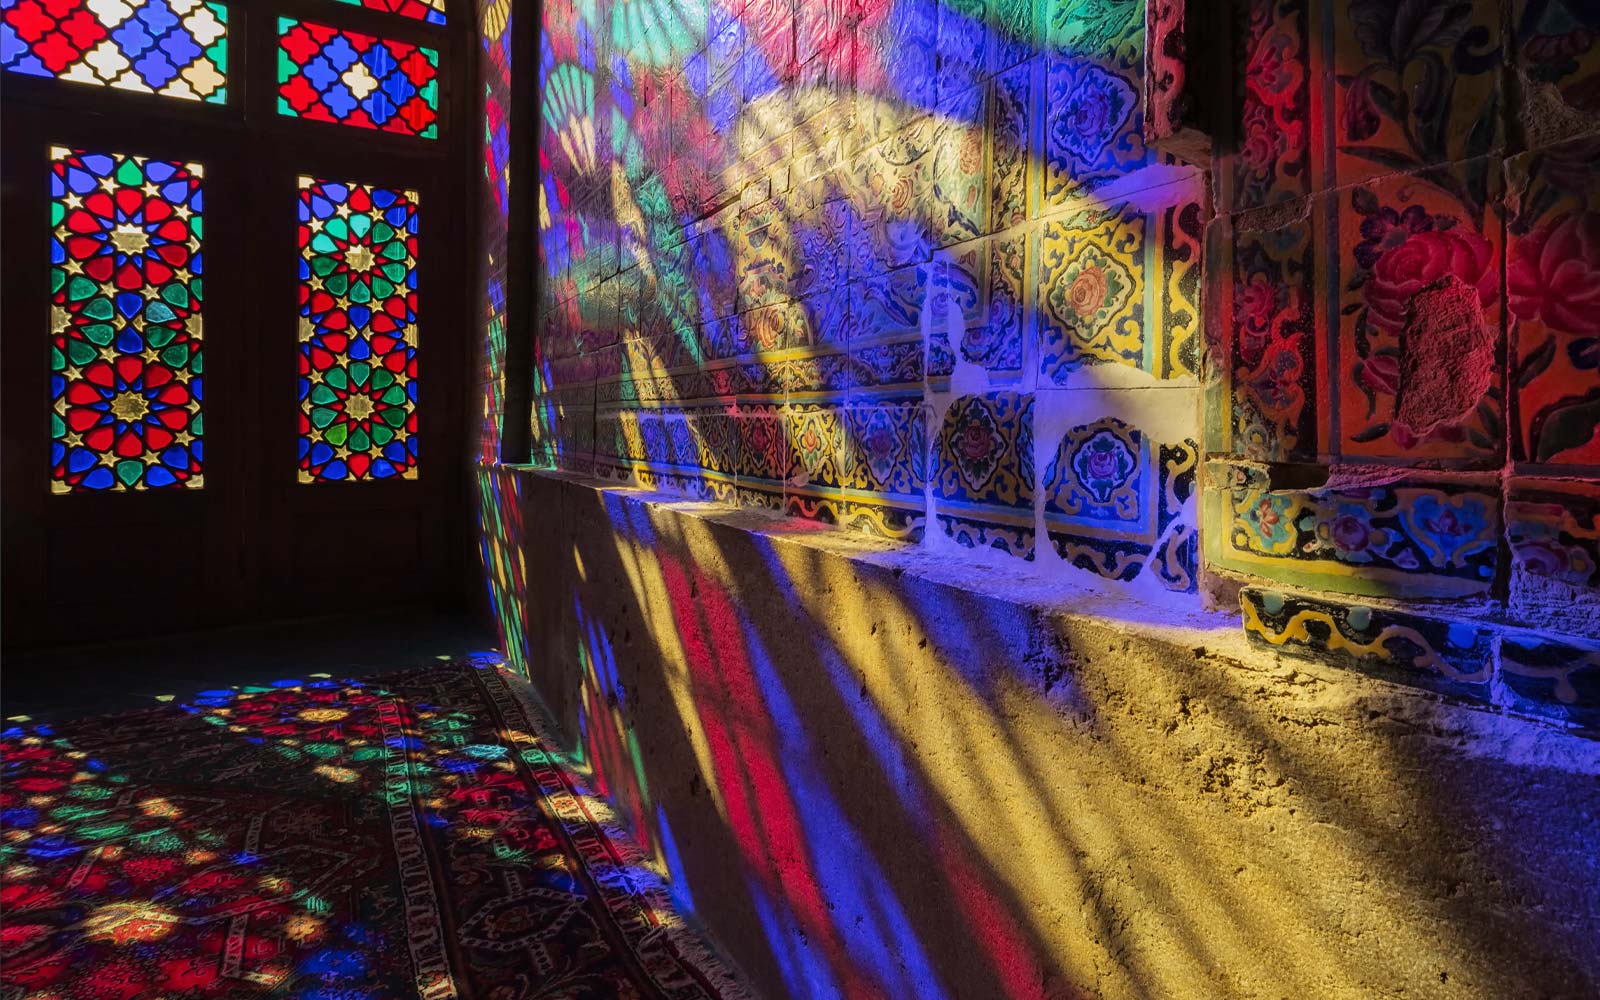 Μια σκηνή στην οποία φαίνεται να περνά φως μέσα από παράθυρα βιτρό, προβάλλοντας τα χρώματα στον τοίχο (αναπαραγωγή βίντεο).